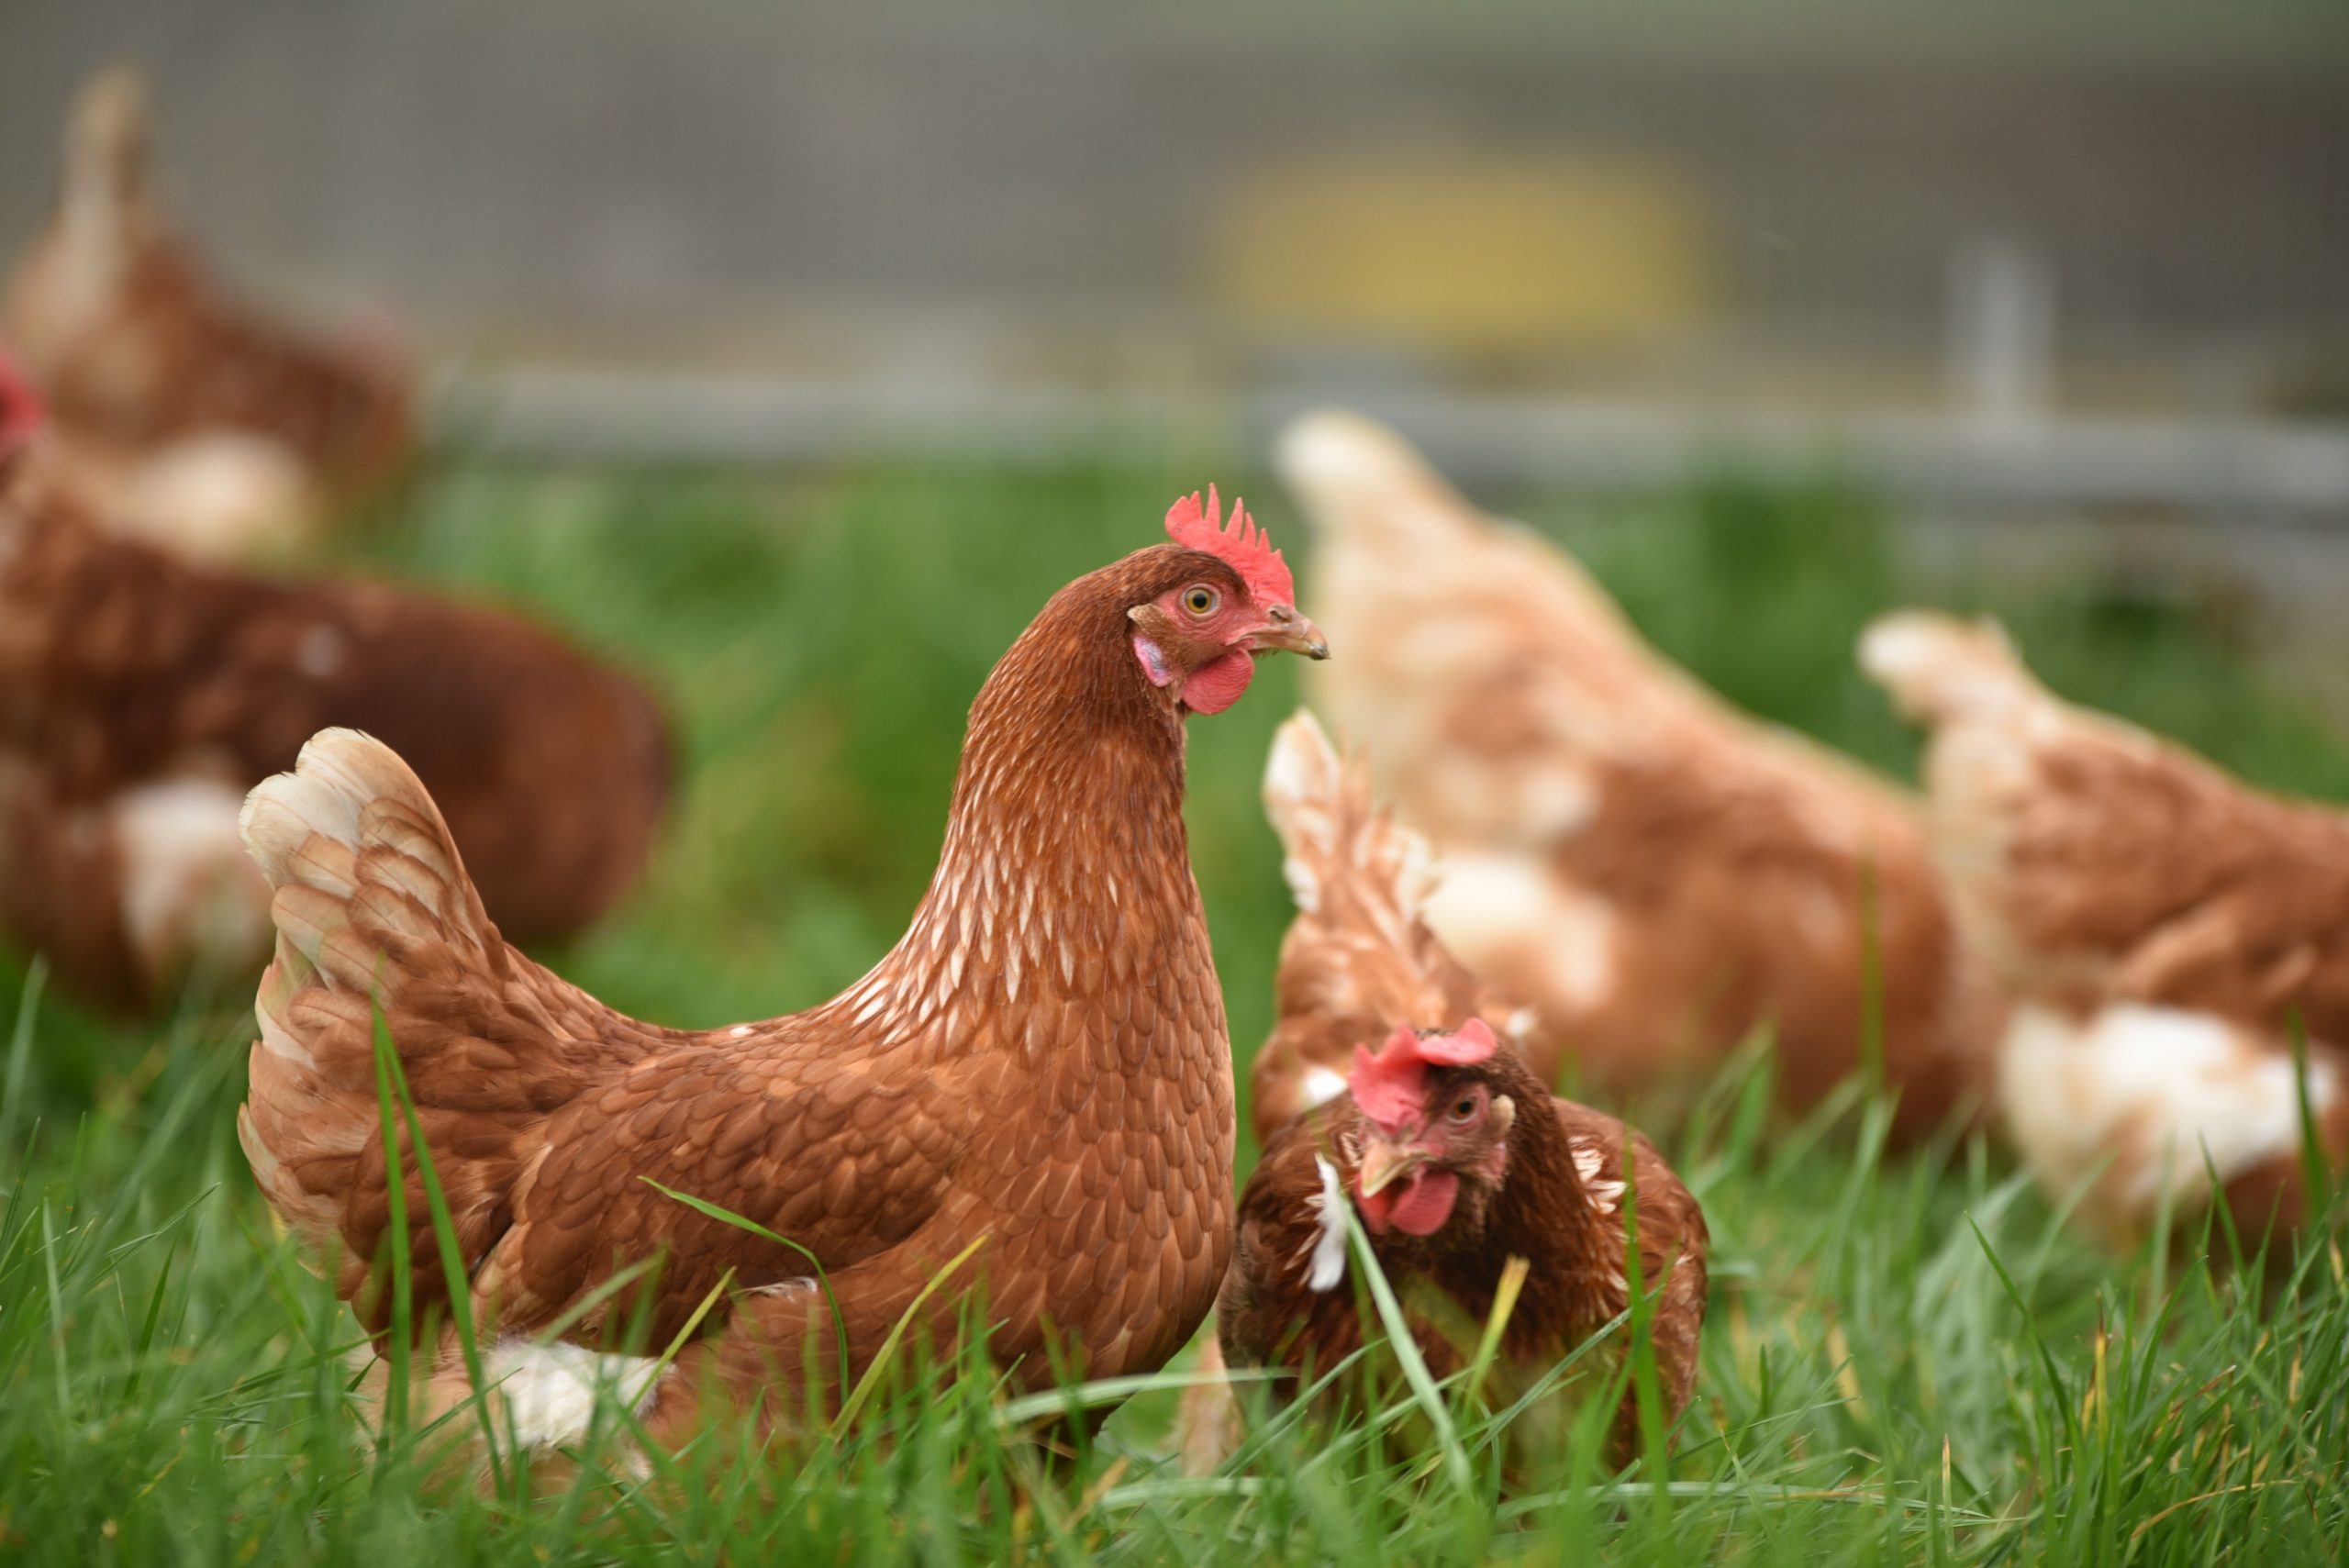 Bird flu case puts chicken, turkey farms on high alert in US